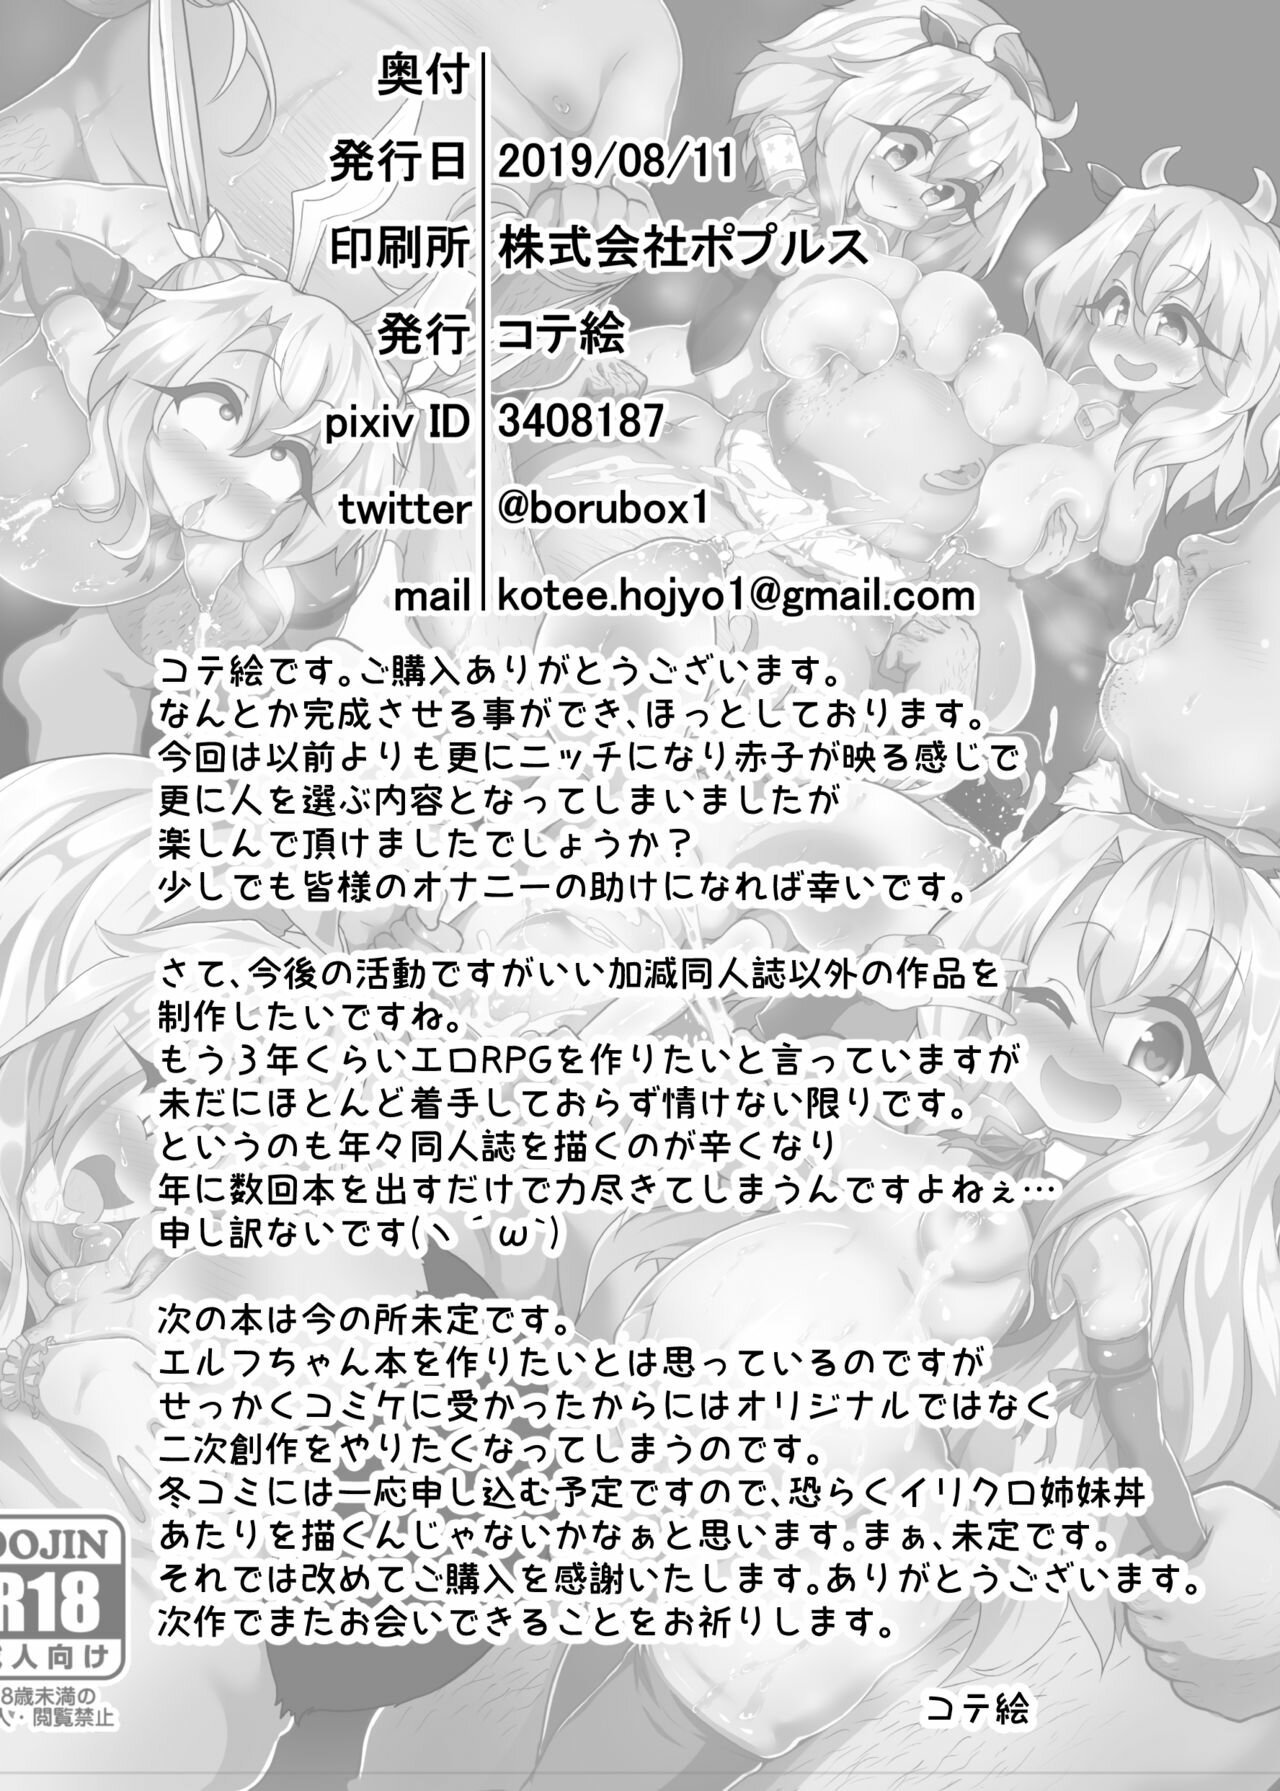 Kozukuri Beast Fate kaleid liner Prisma Illya - 24